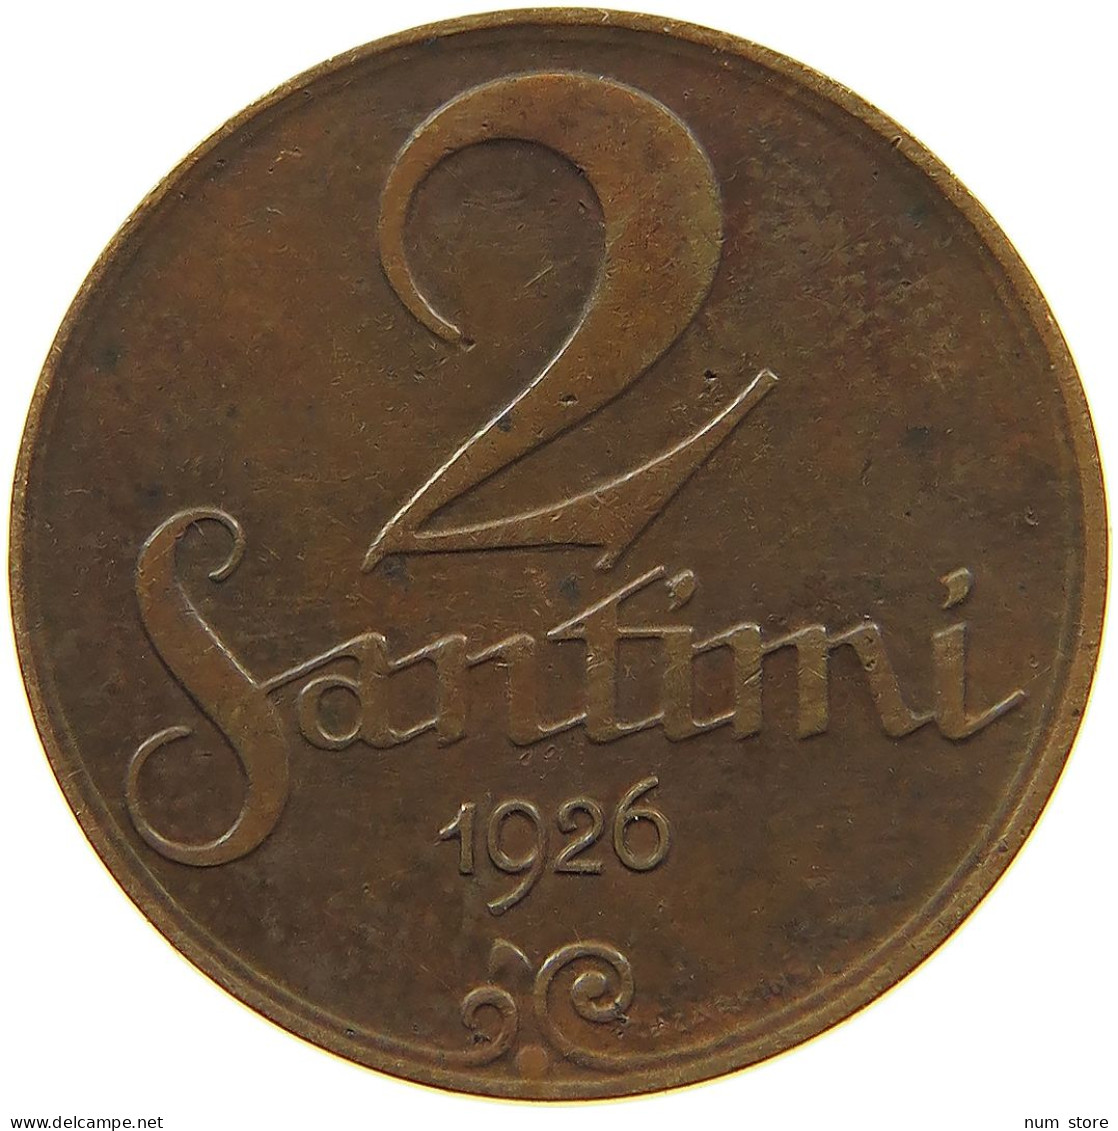 LATVIA 2 SANTIMI 1926  #MA 100831 - Letland